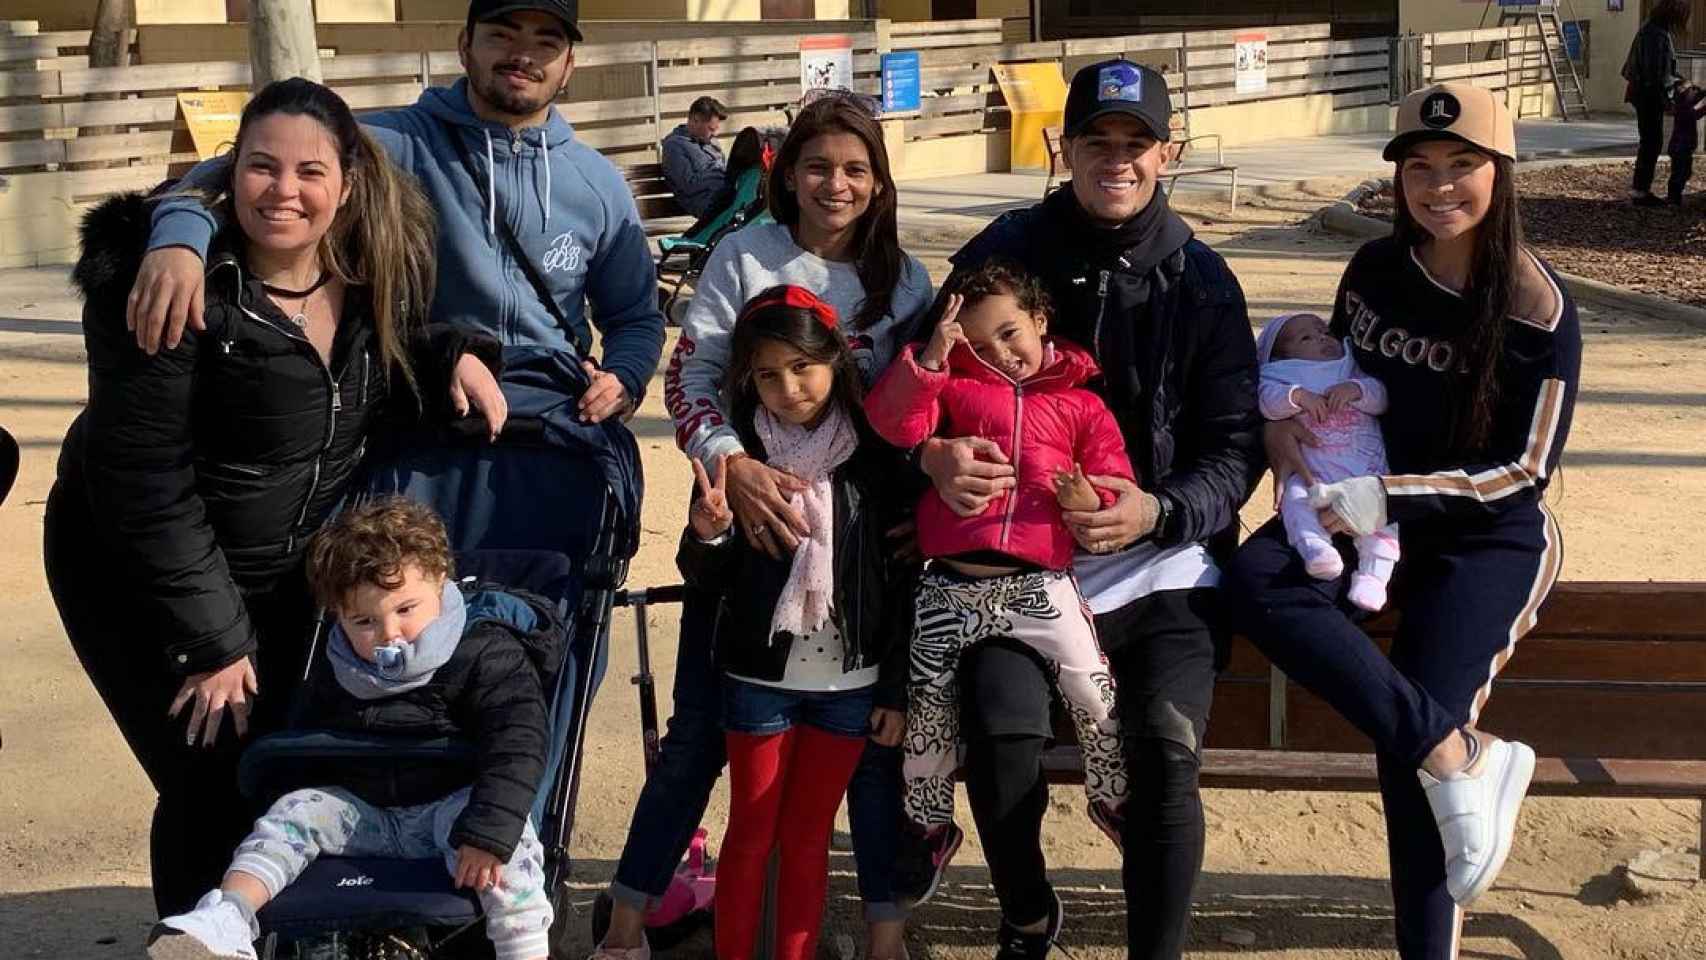 Aine y Coutinho con sus hijas y su familia en el Zoo de Barcelona / INSTAGRAM